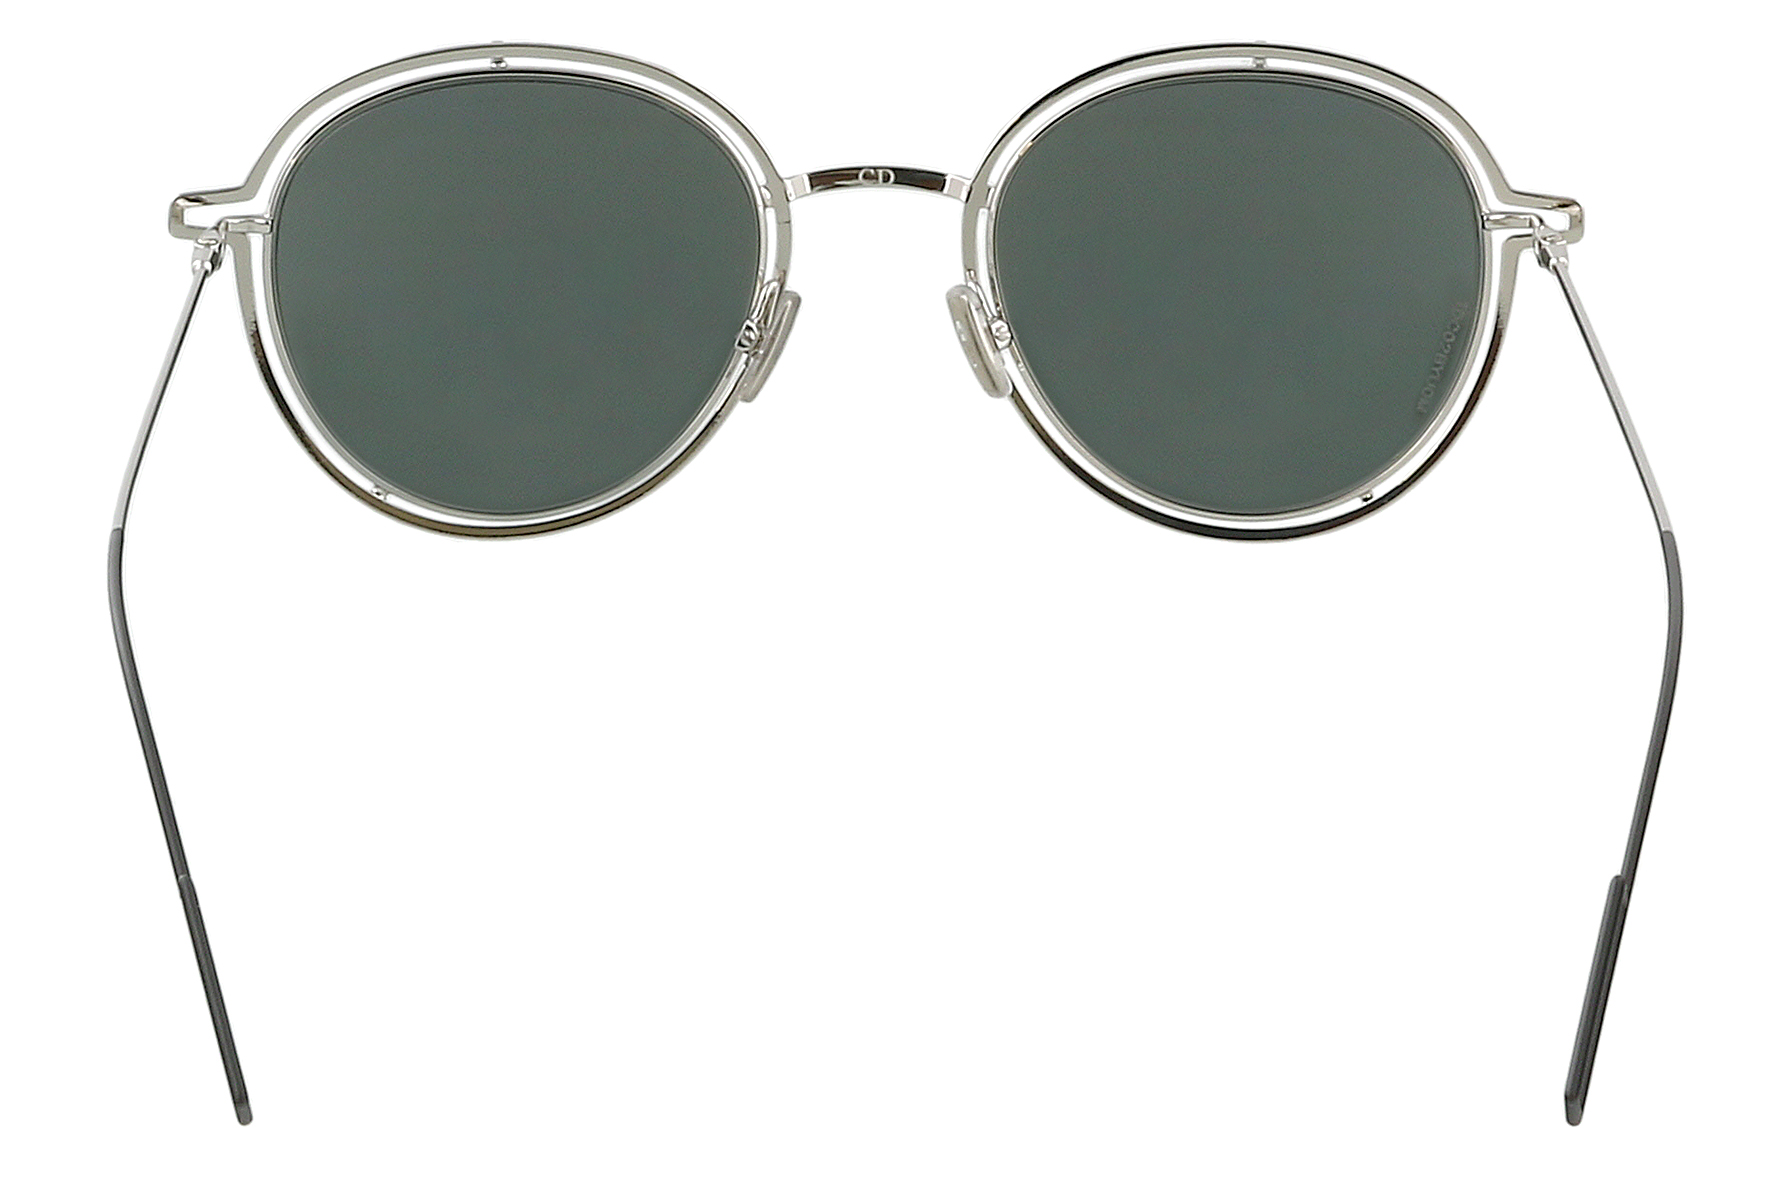 Dior Silver Mirror Round Sunglasses, Dior Silver Mirror Round Sunglasses Cd 0210s 010 Dc